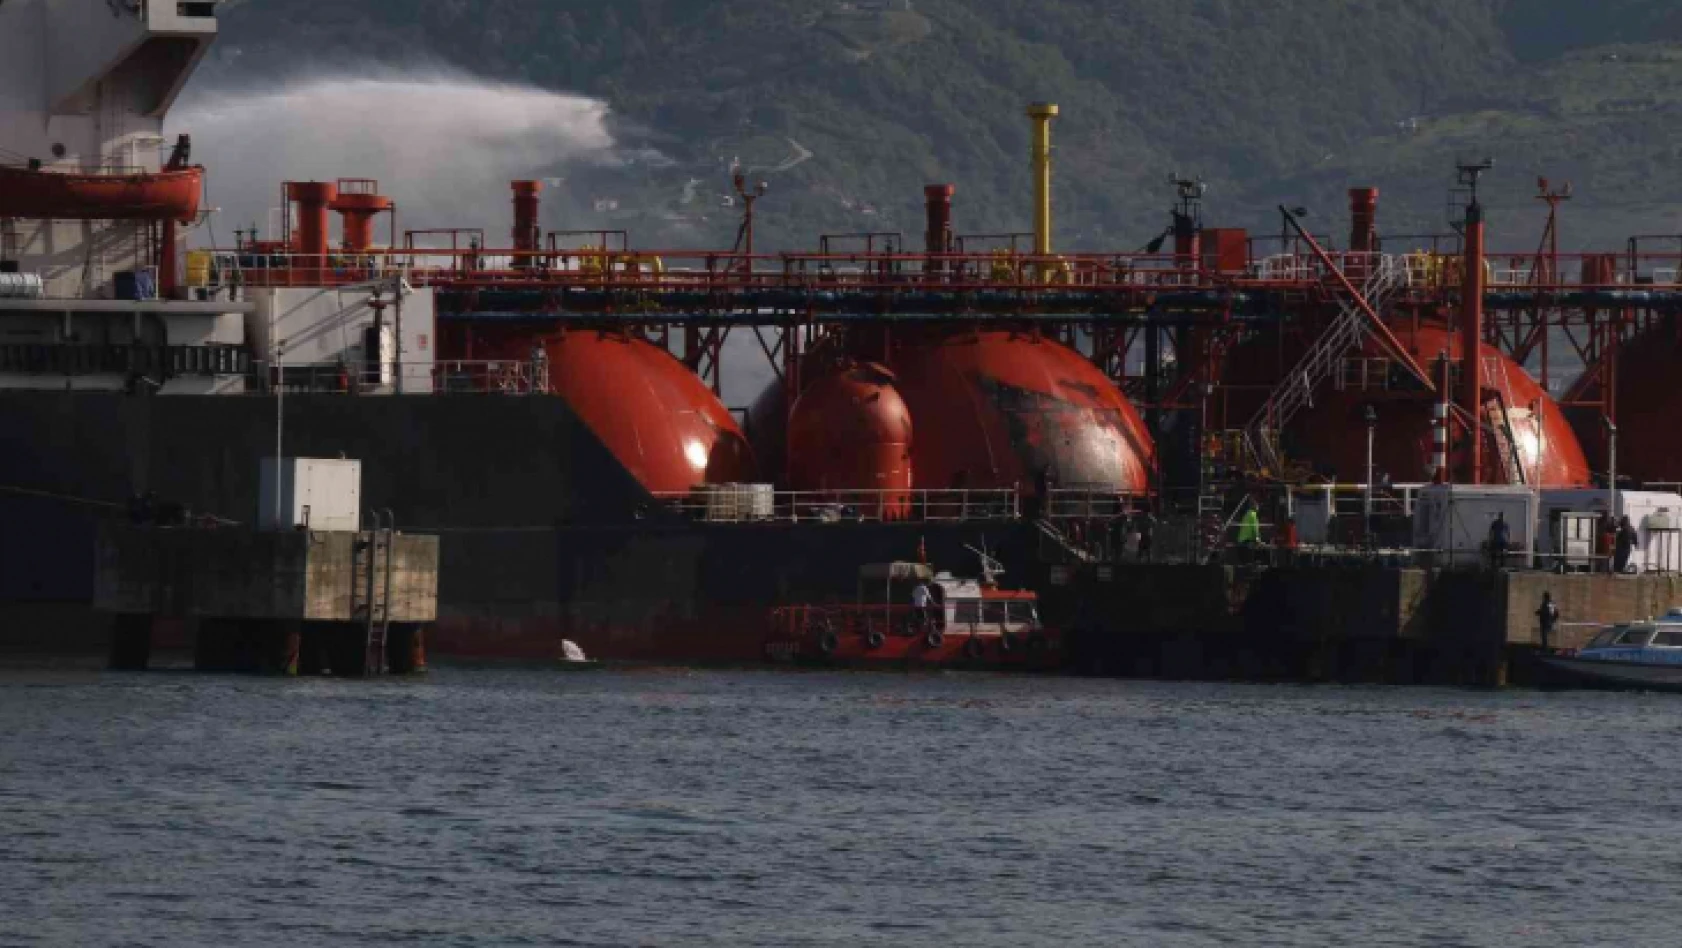 Körfez'de LPG tankerinin patlamasına ilişkin savunma yapan sanık: 'Meydana gelen kusur HABAŞ'a aittir'